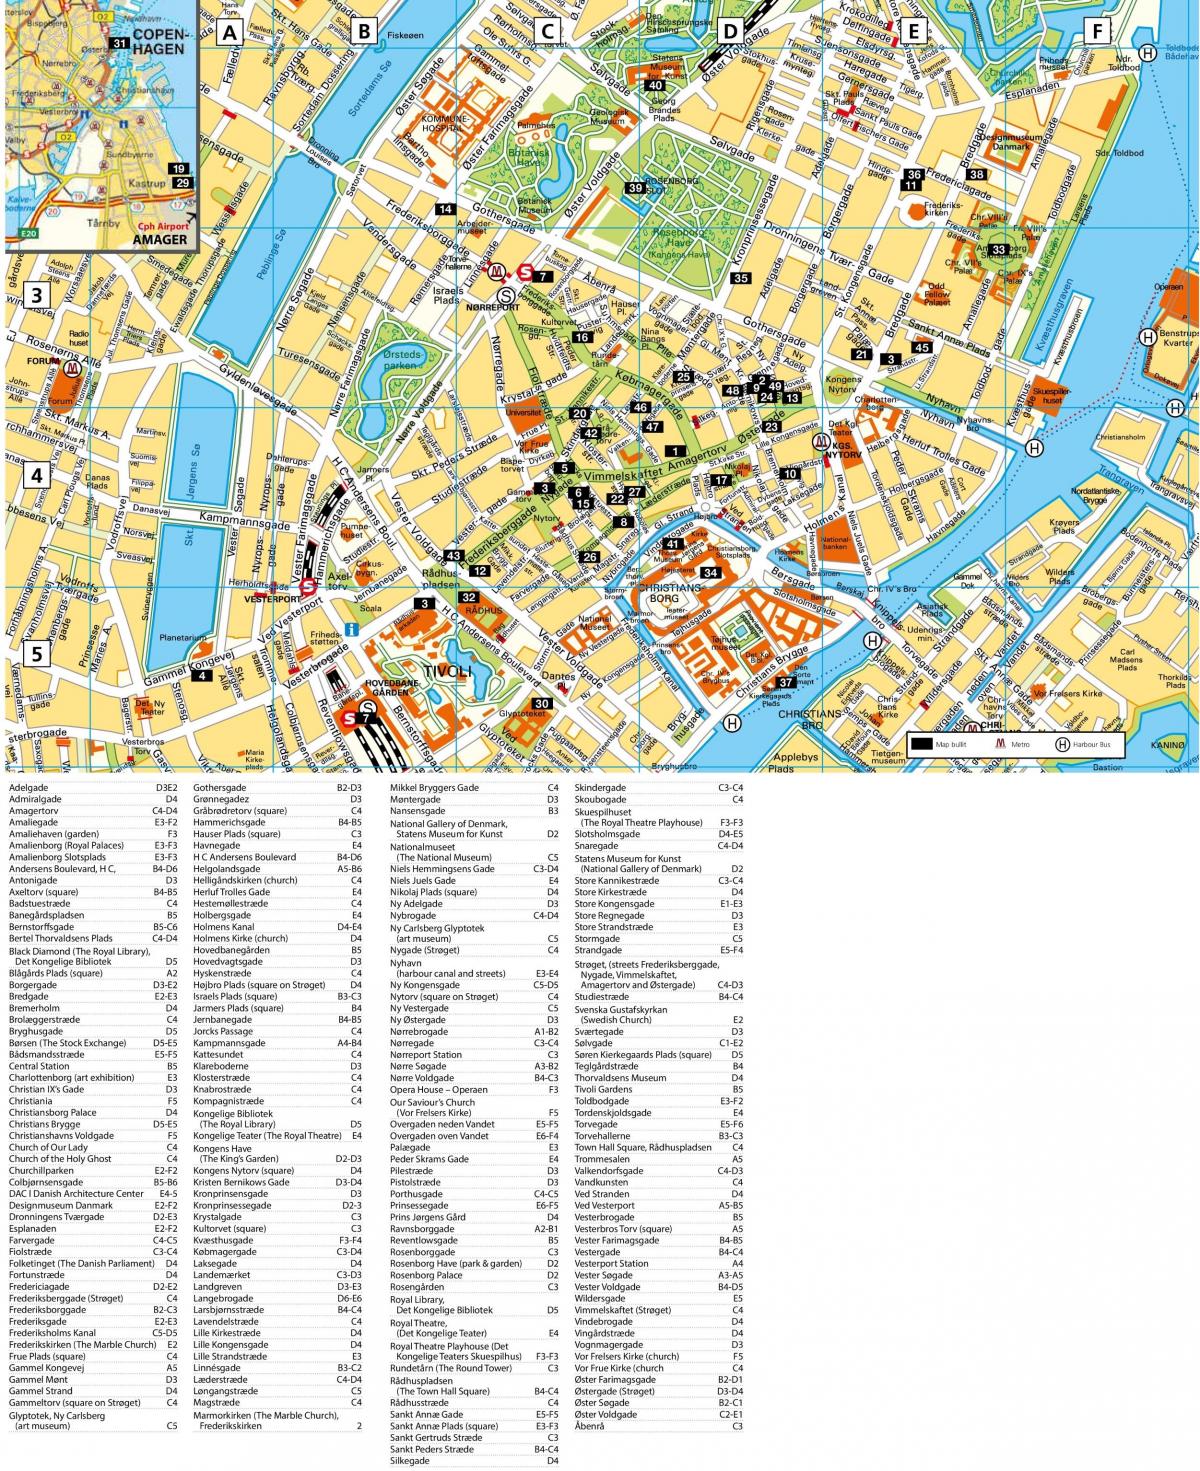 Mappa delle strade di Copenaghen